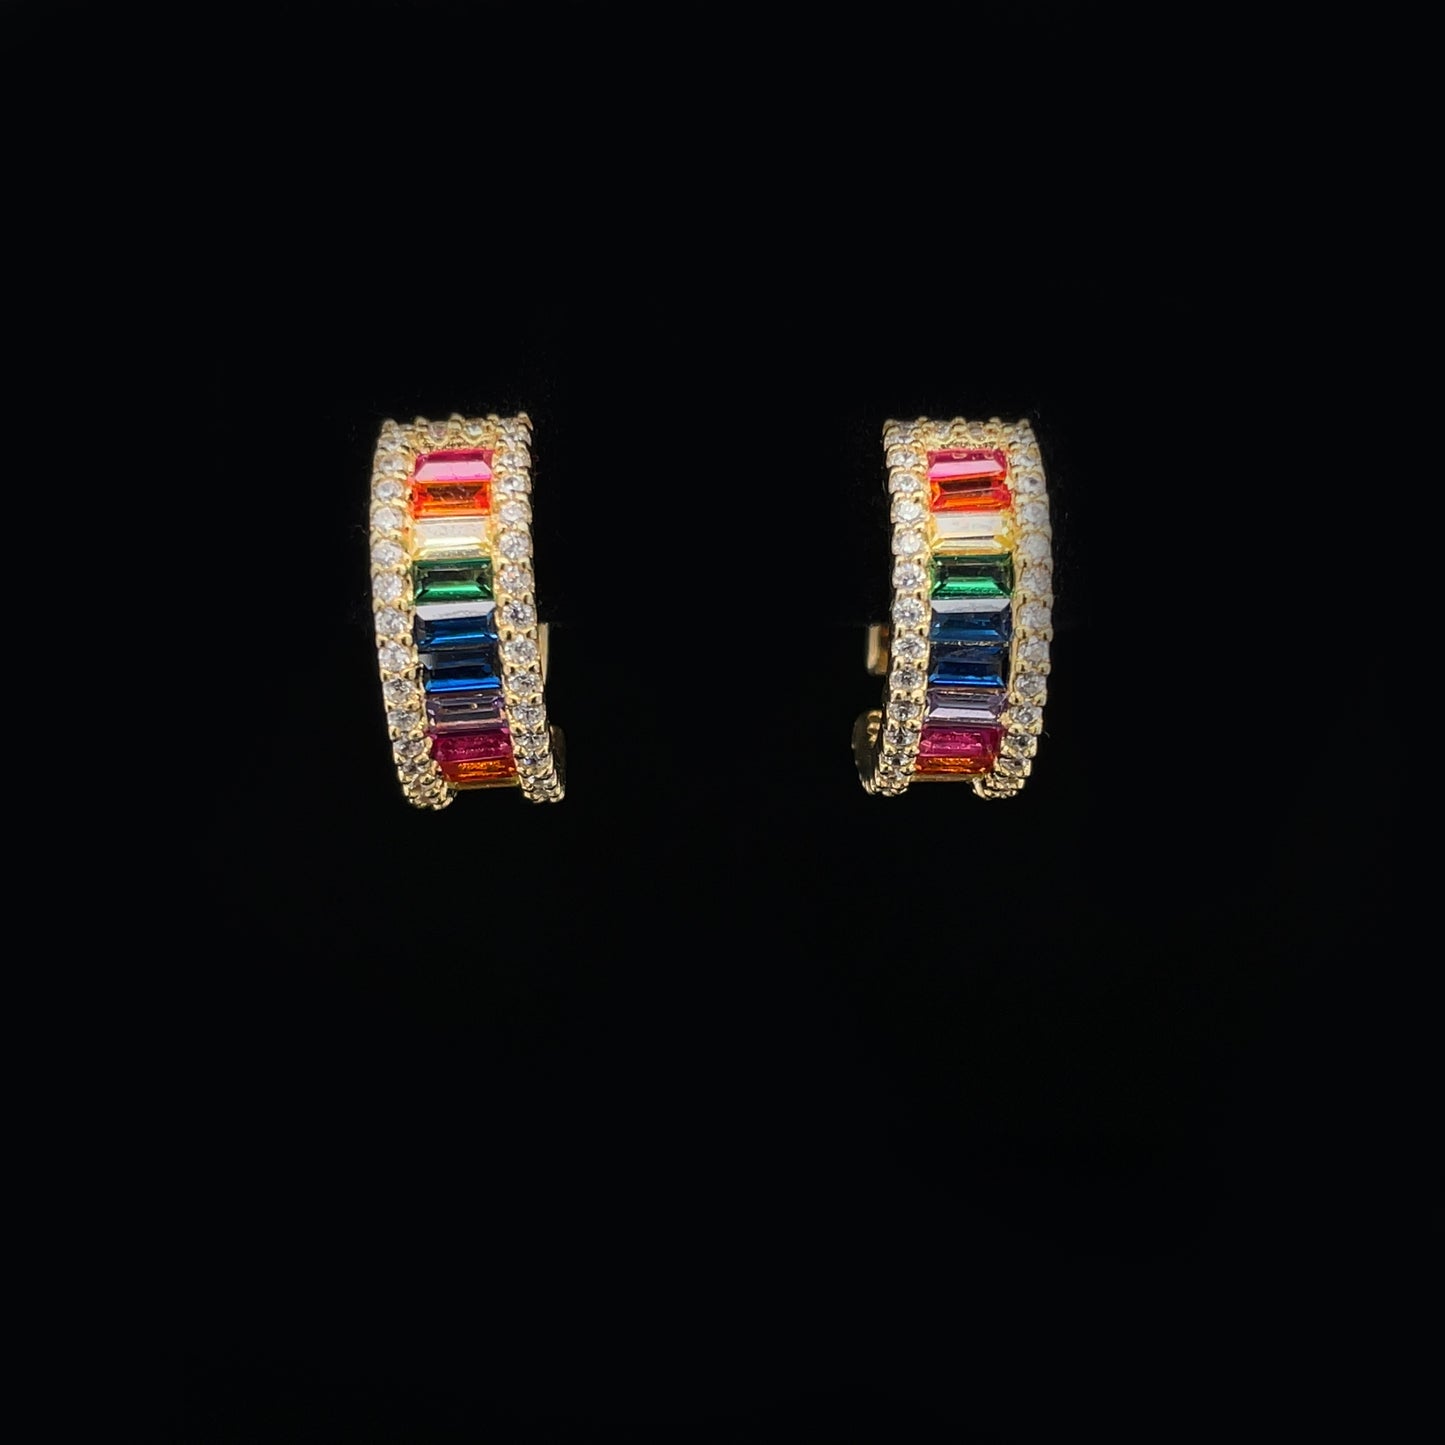 Rainbow Hoop Earrings